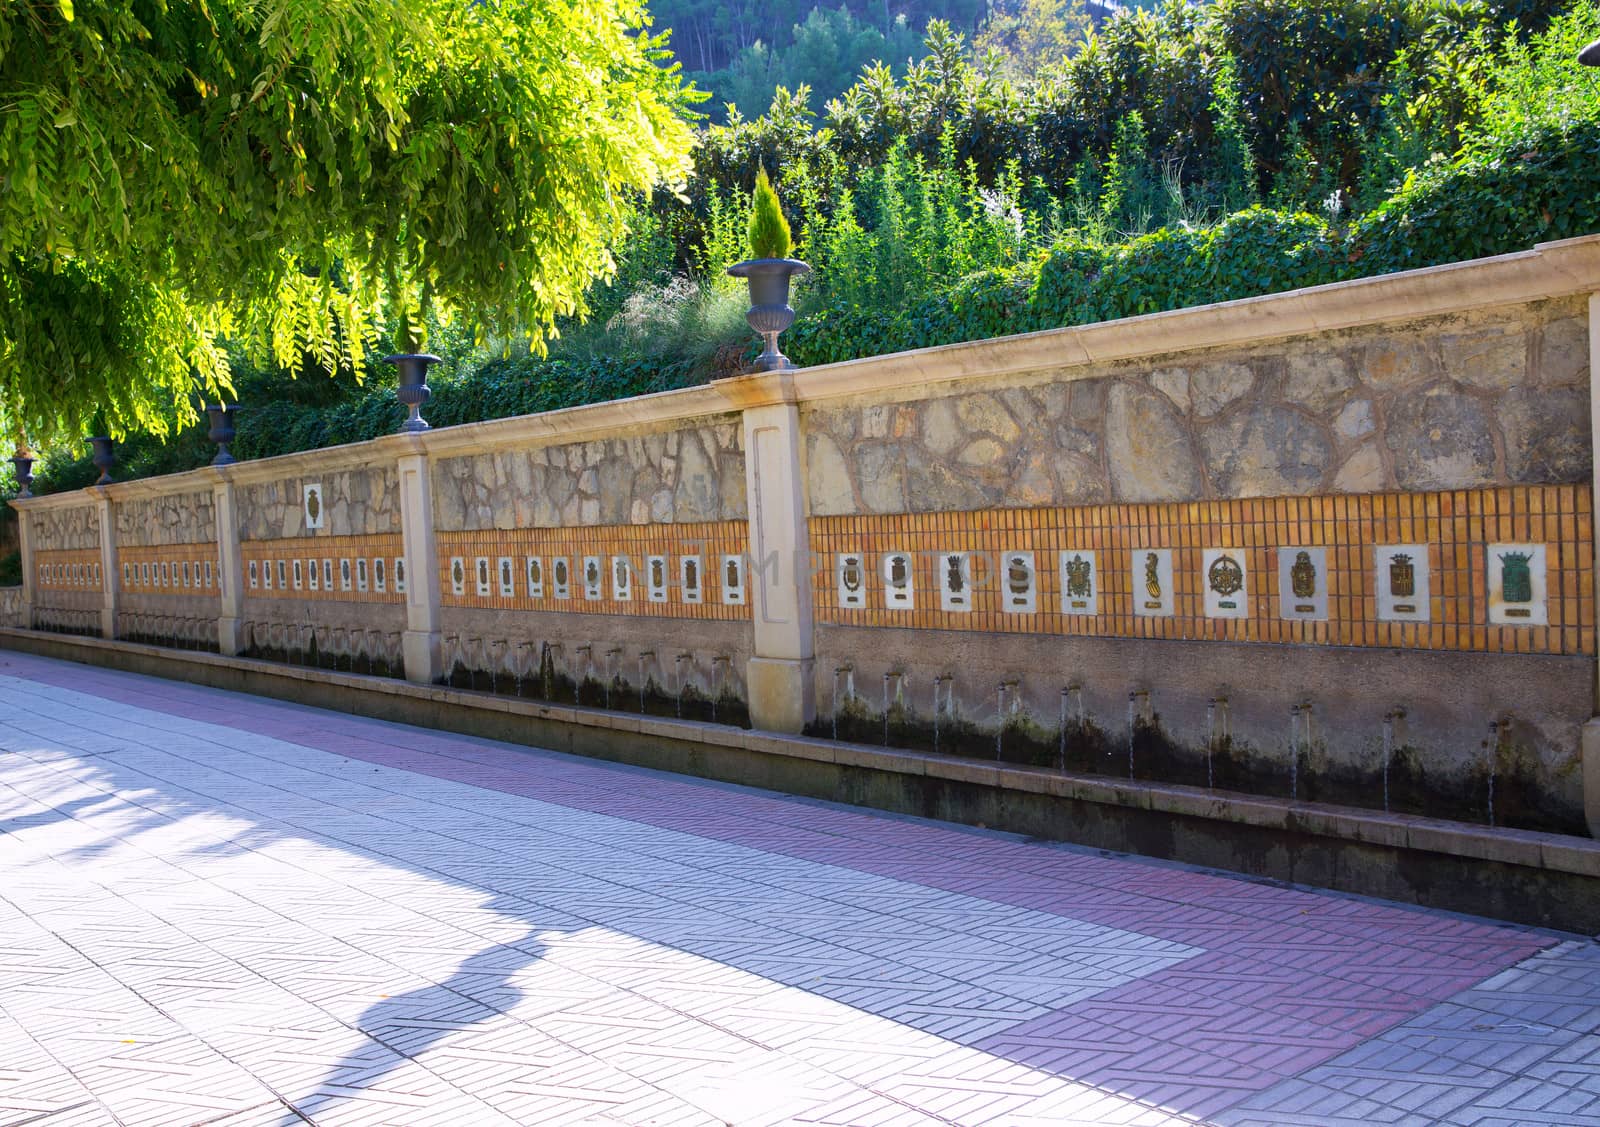 Segorbe fuente de los 50 canos fountain Castellon Spain by lunamarina